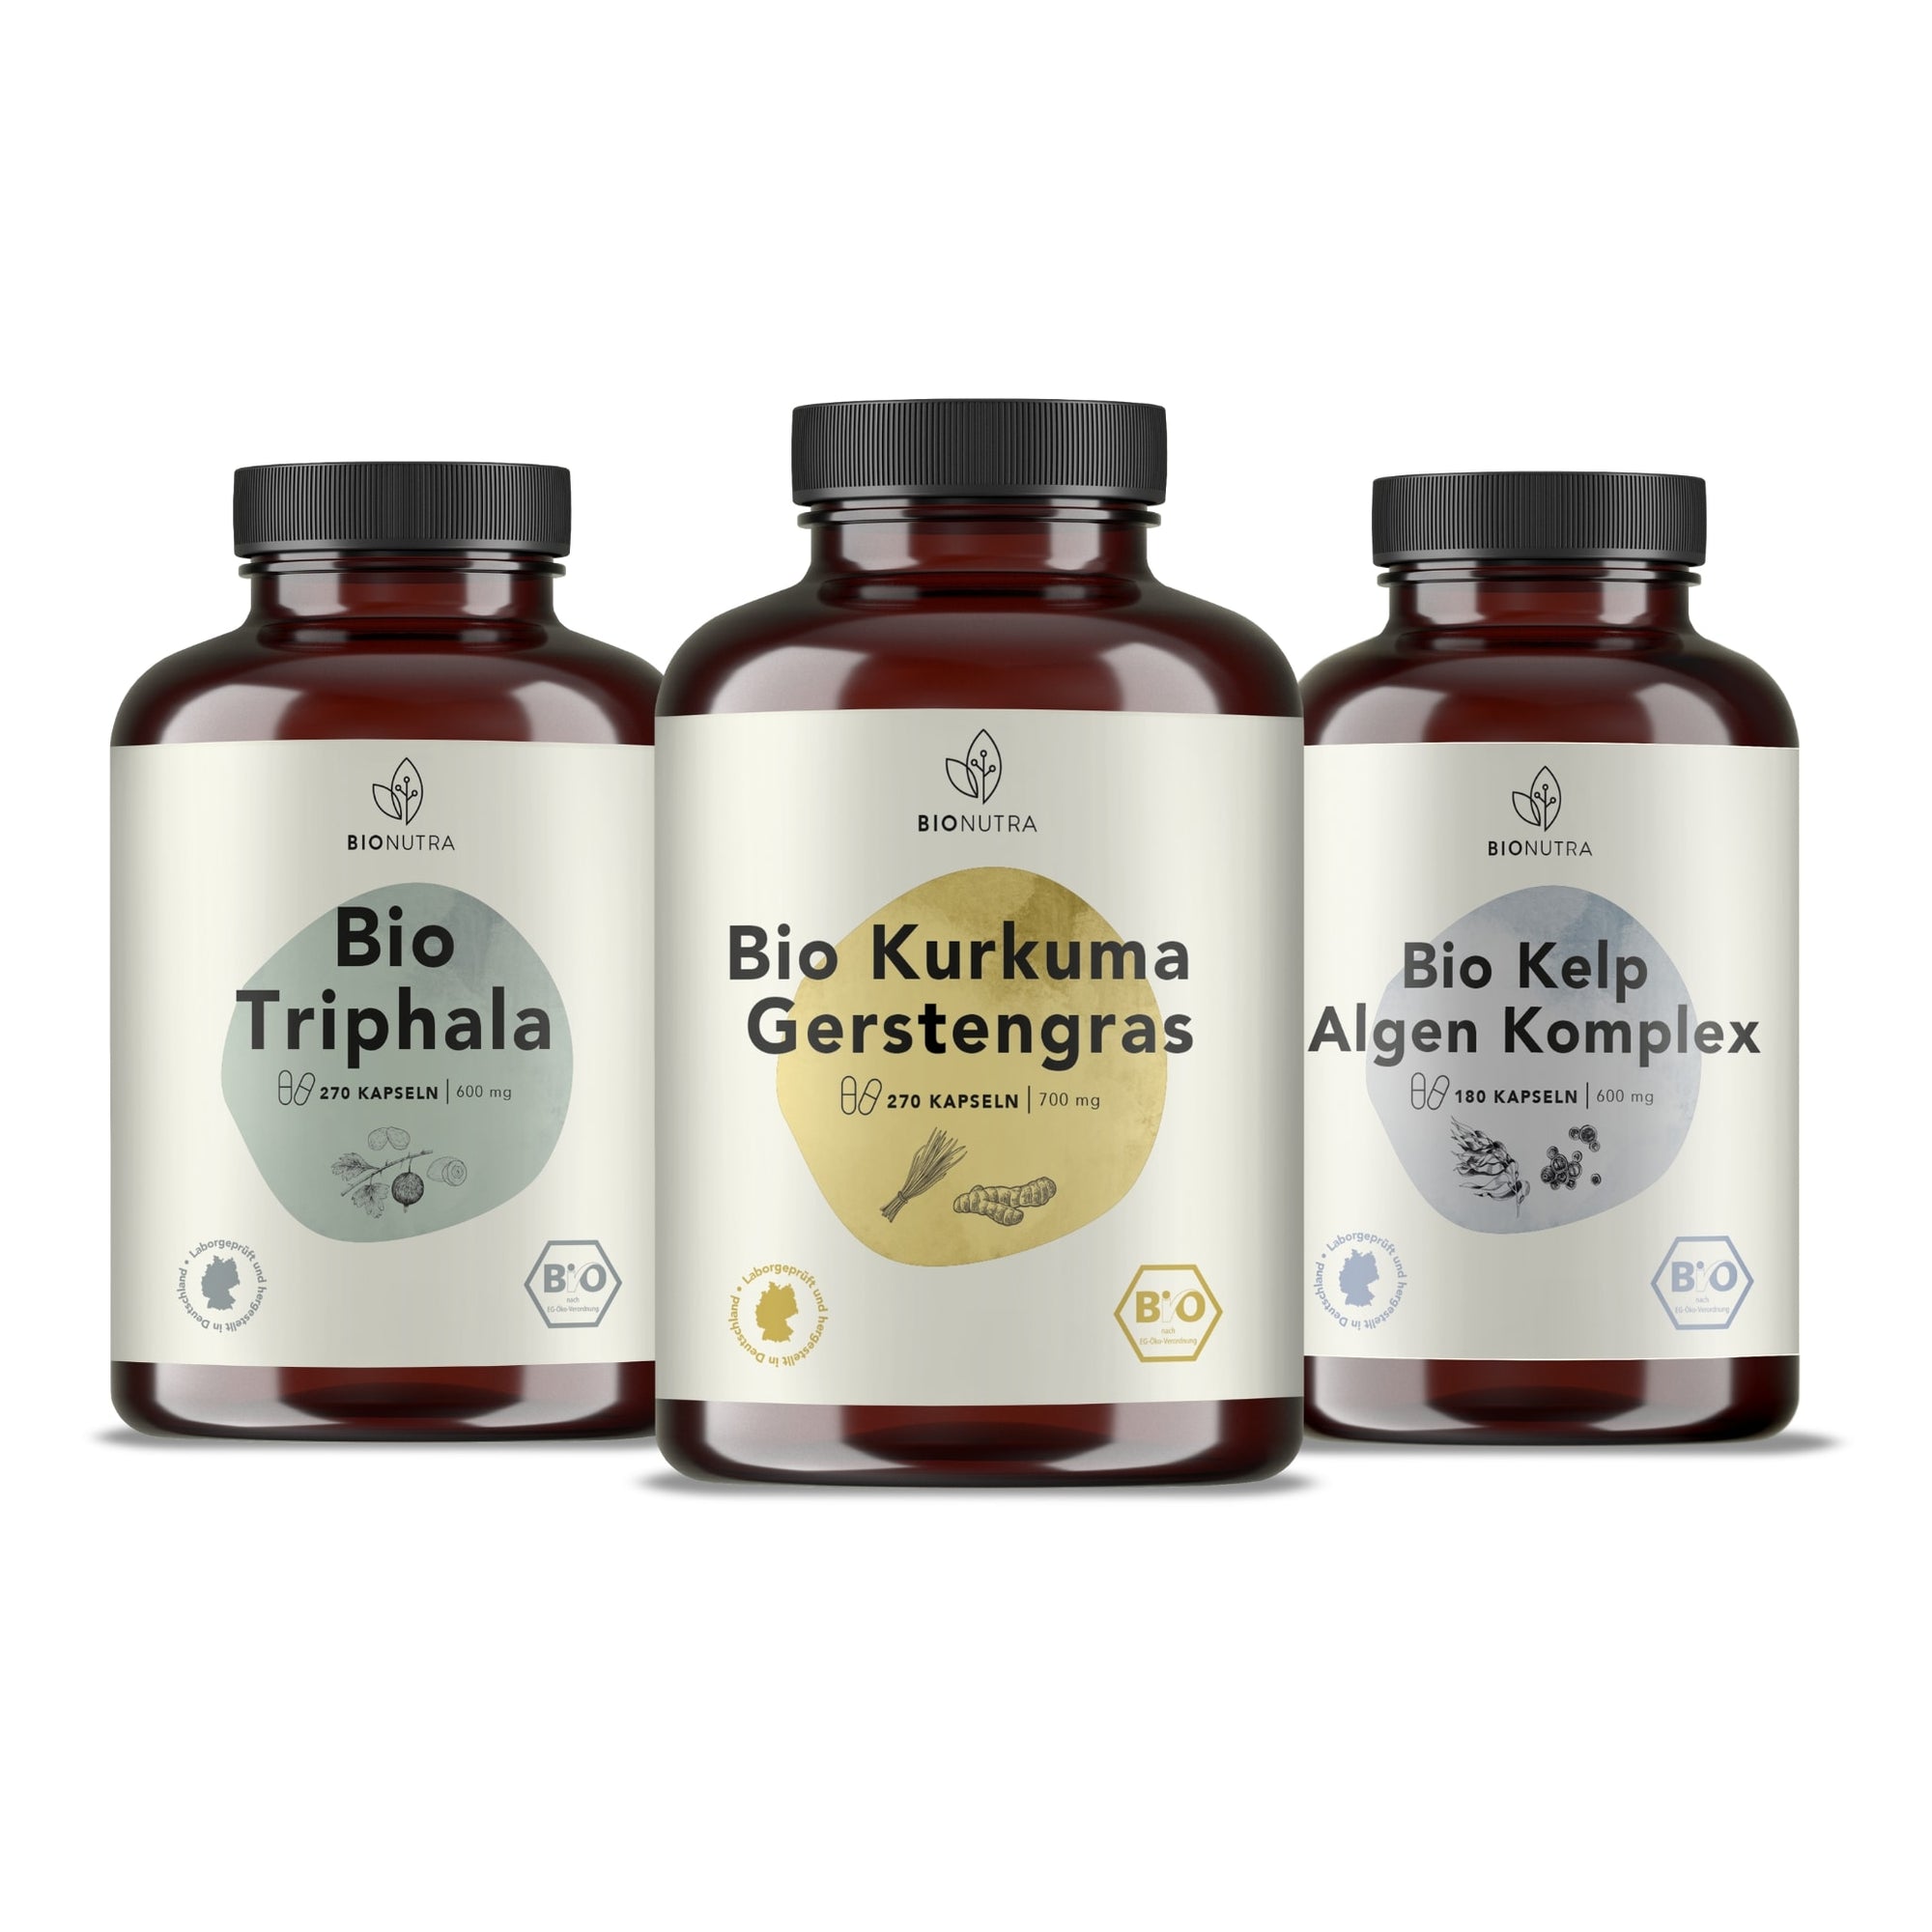 Bionutra Schönheit Kur enthält Bio Kurkuma Gerstengras Kapsel, Bio Triphala Kapseln, Bio Kelp Jod Algen Komplex Kapseln